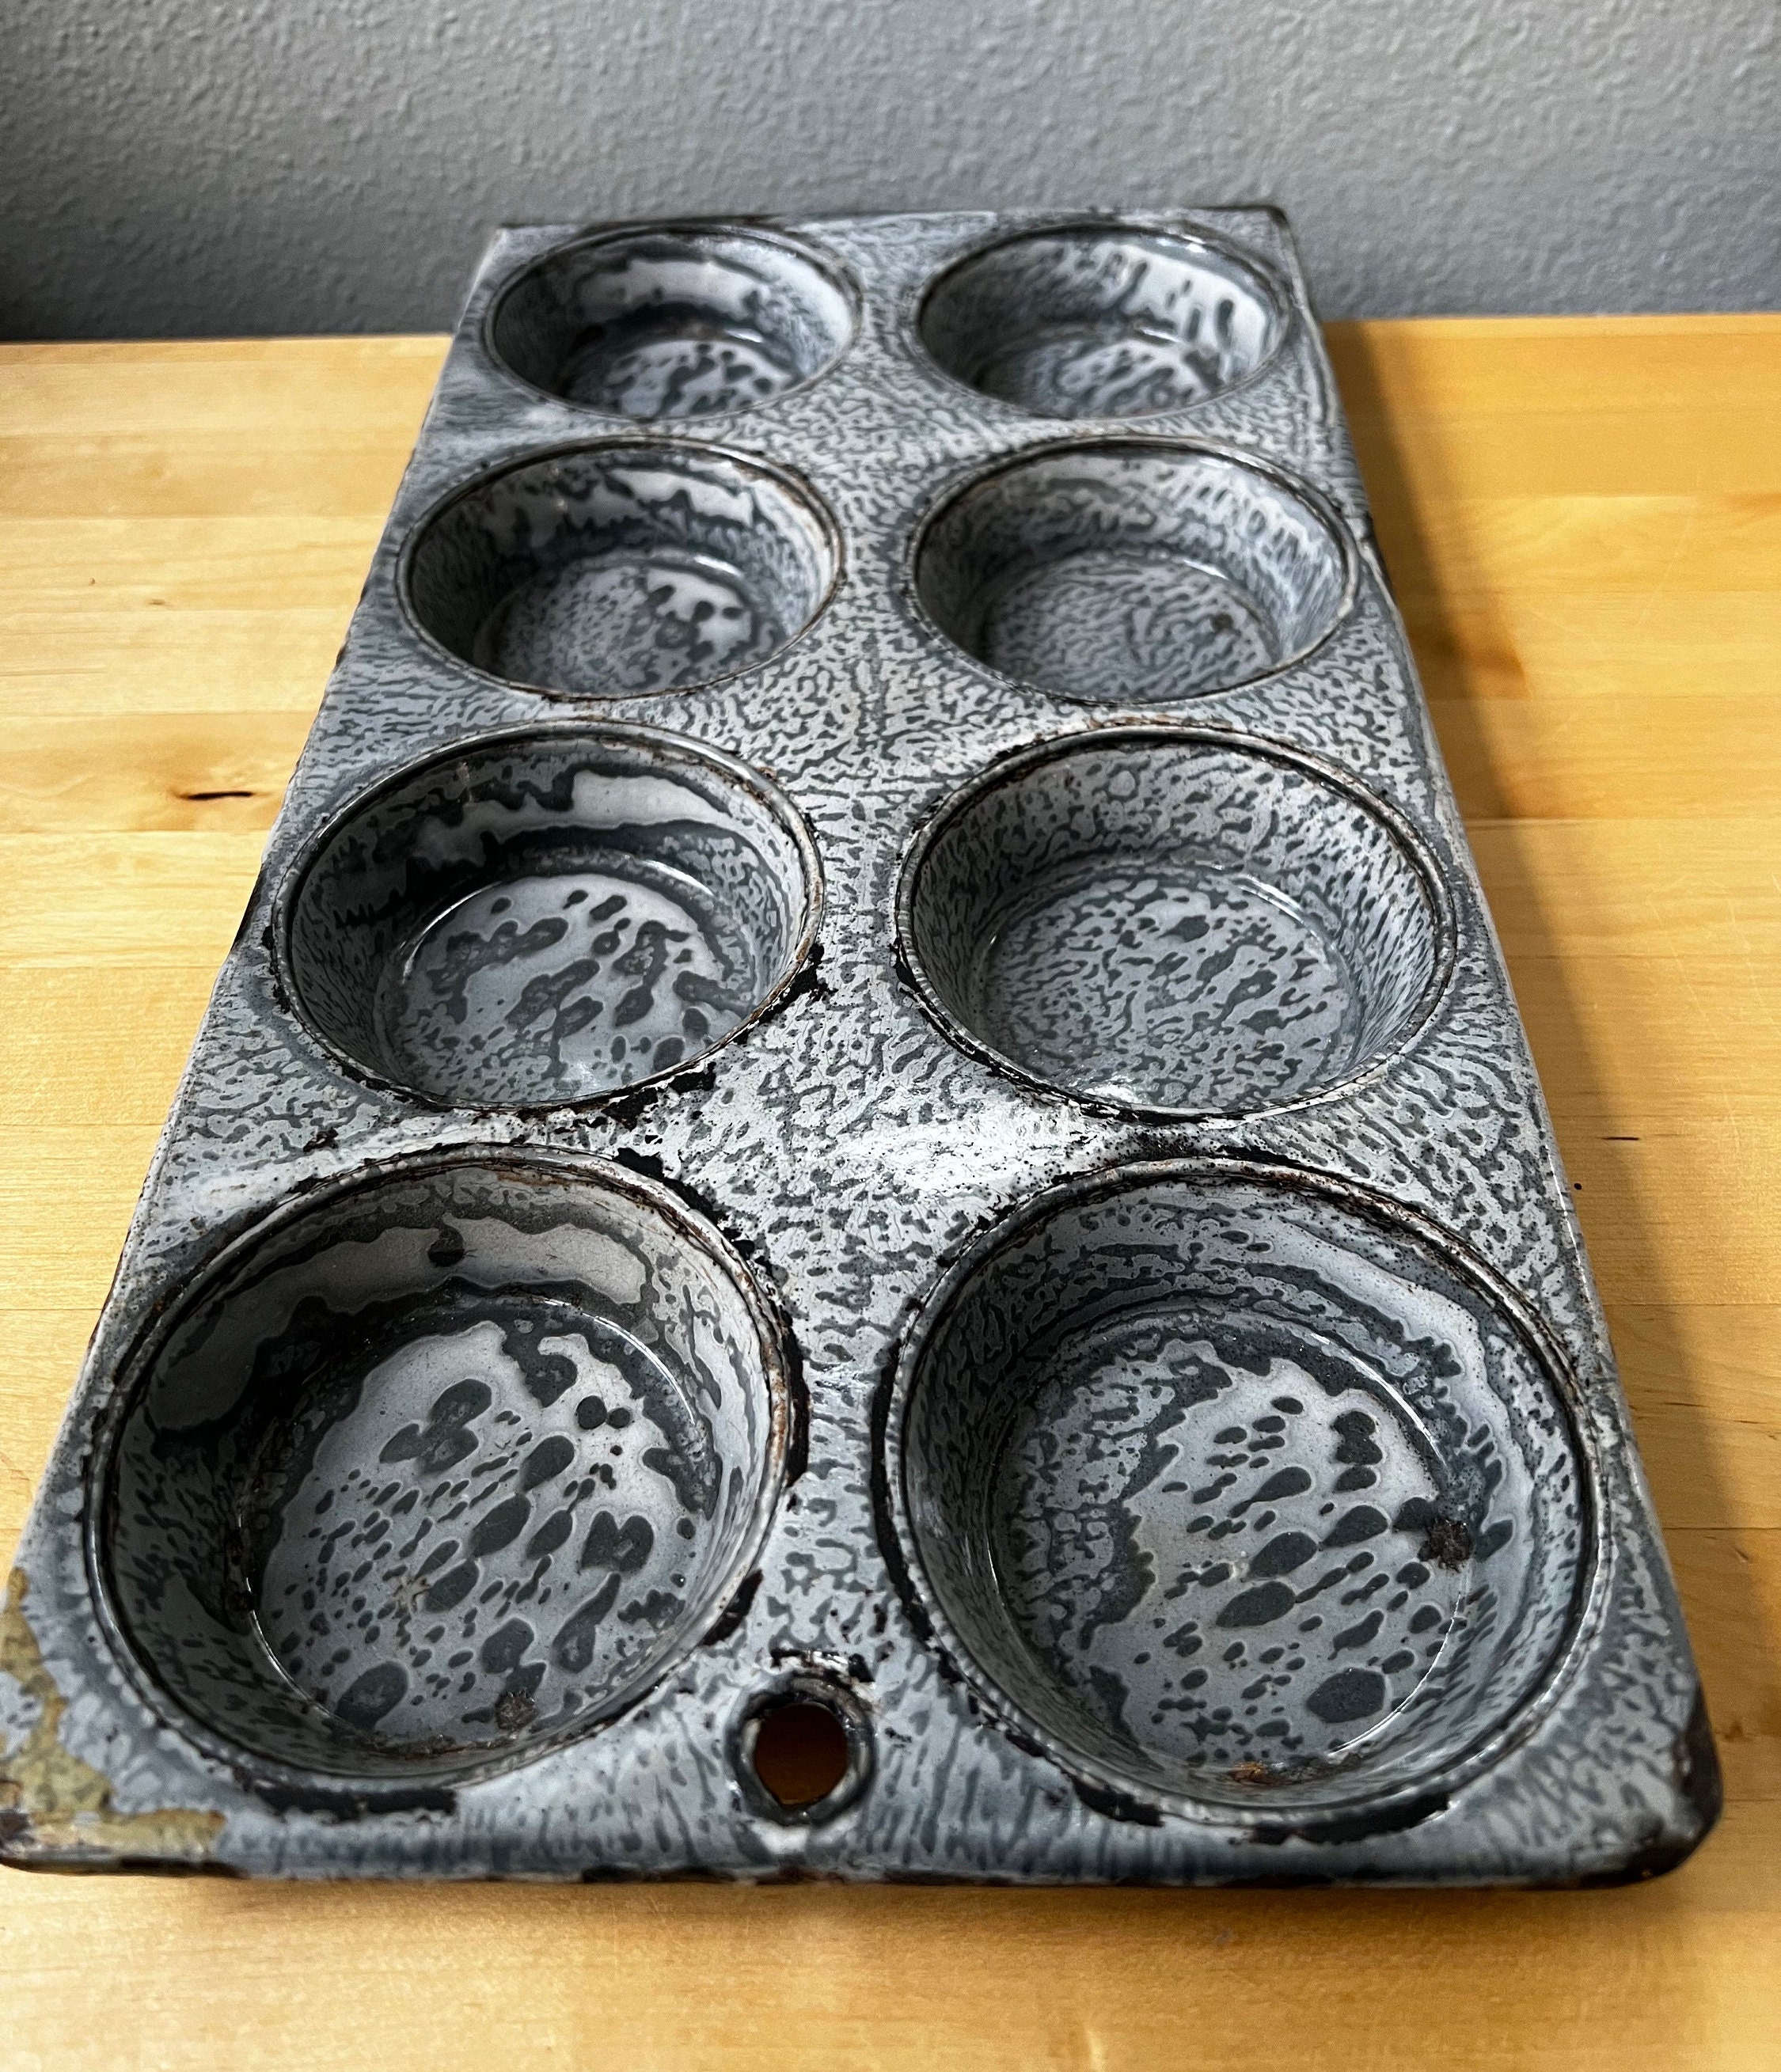 casaWare Ceramic Coated NonStick 12 Cup Muffin Pan (Red Granite